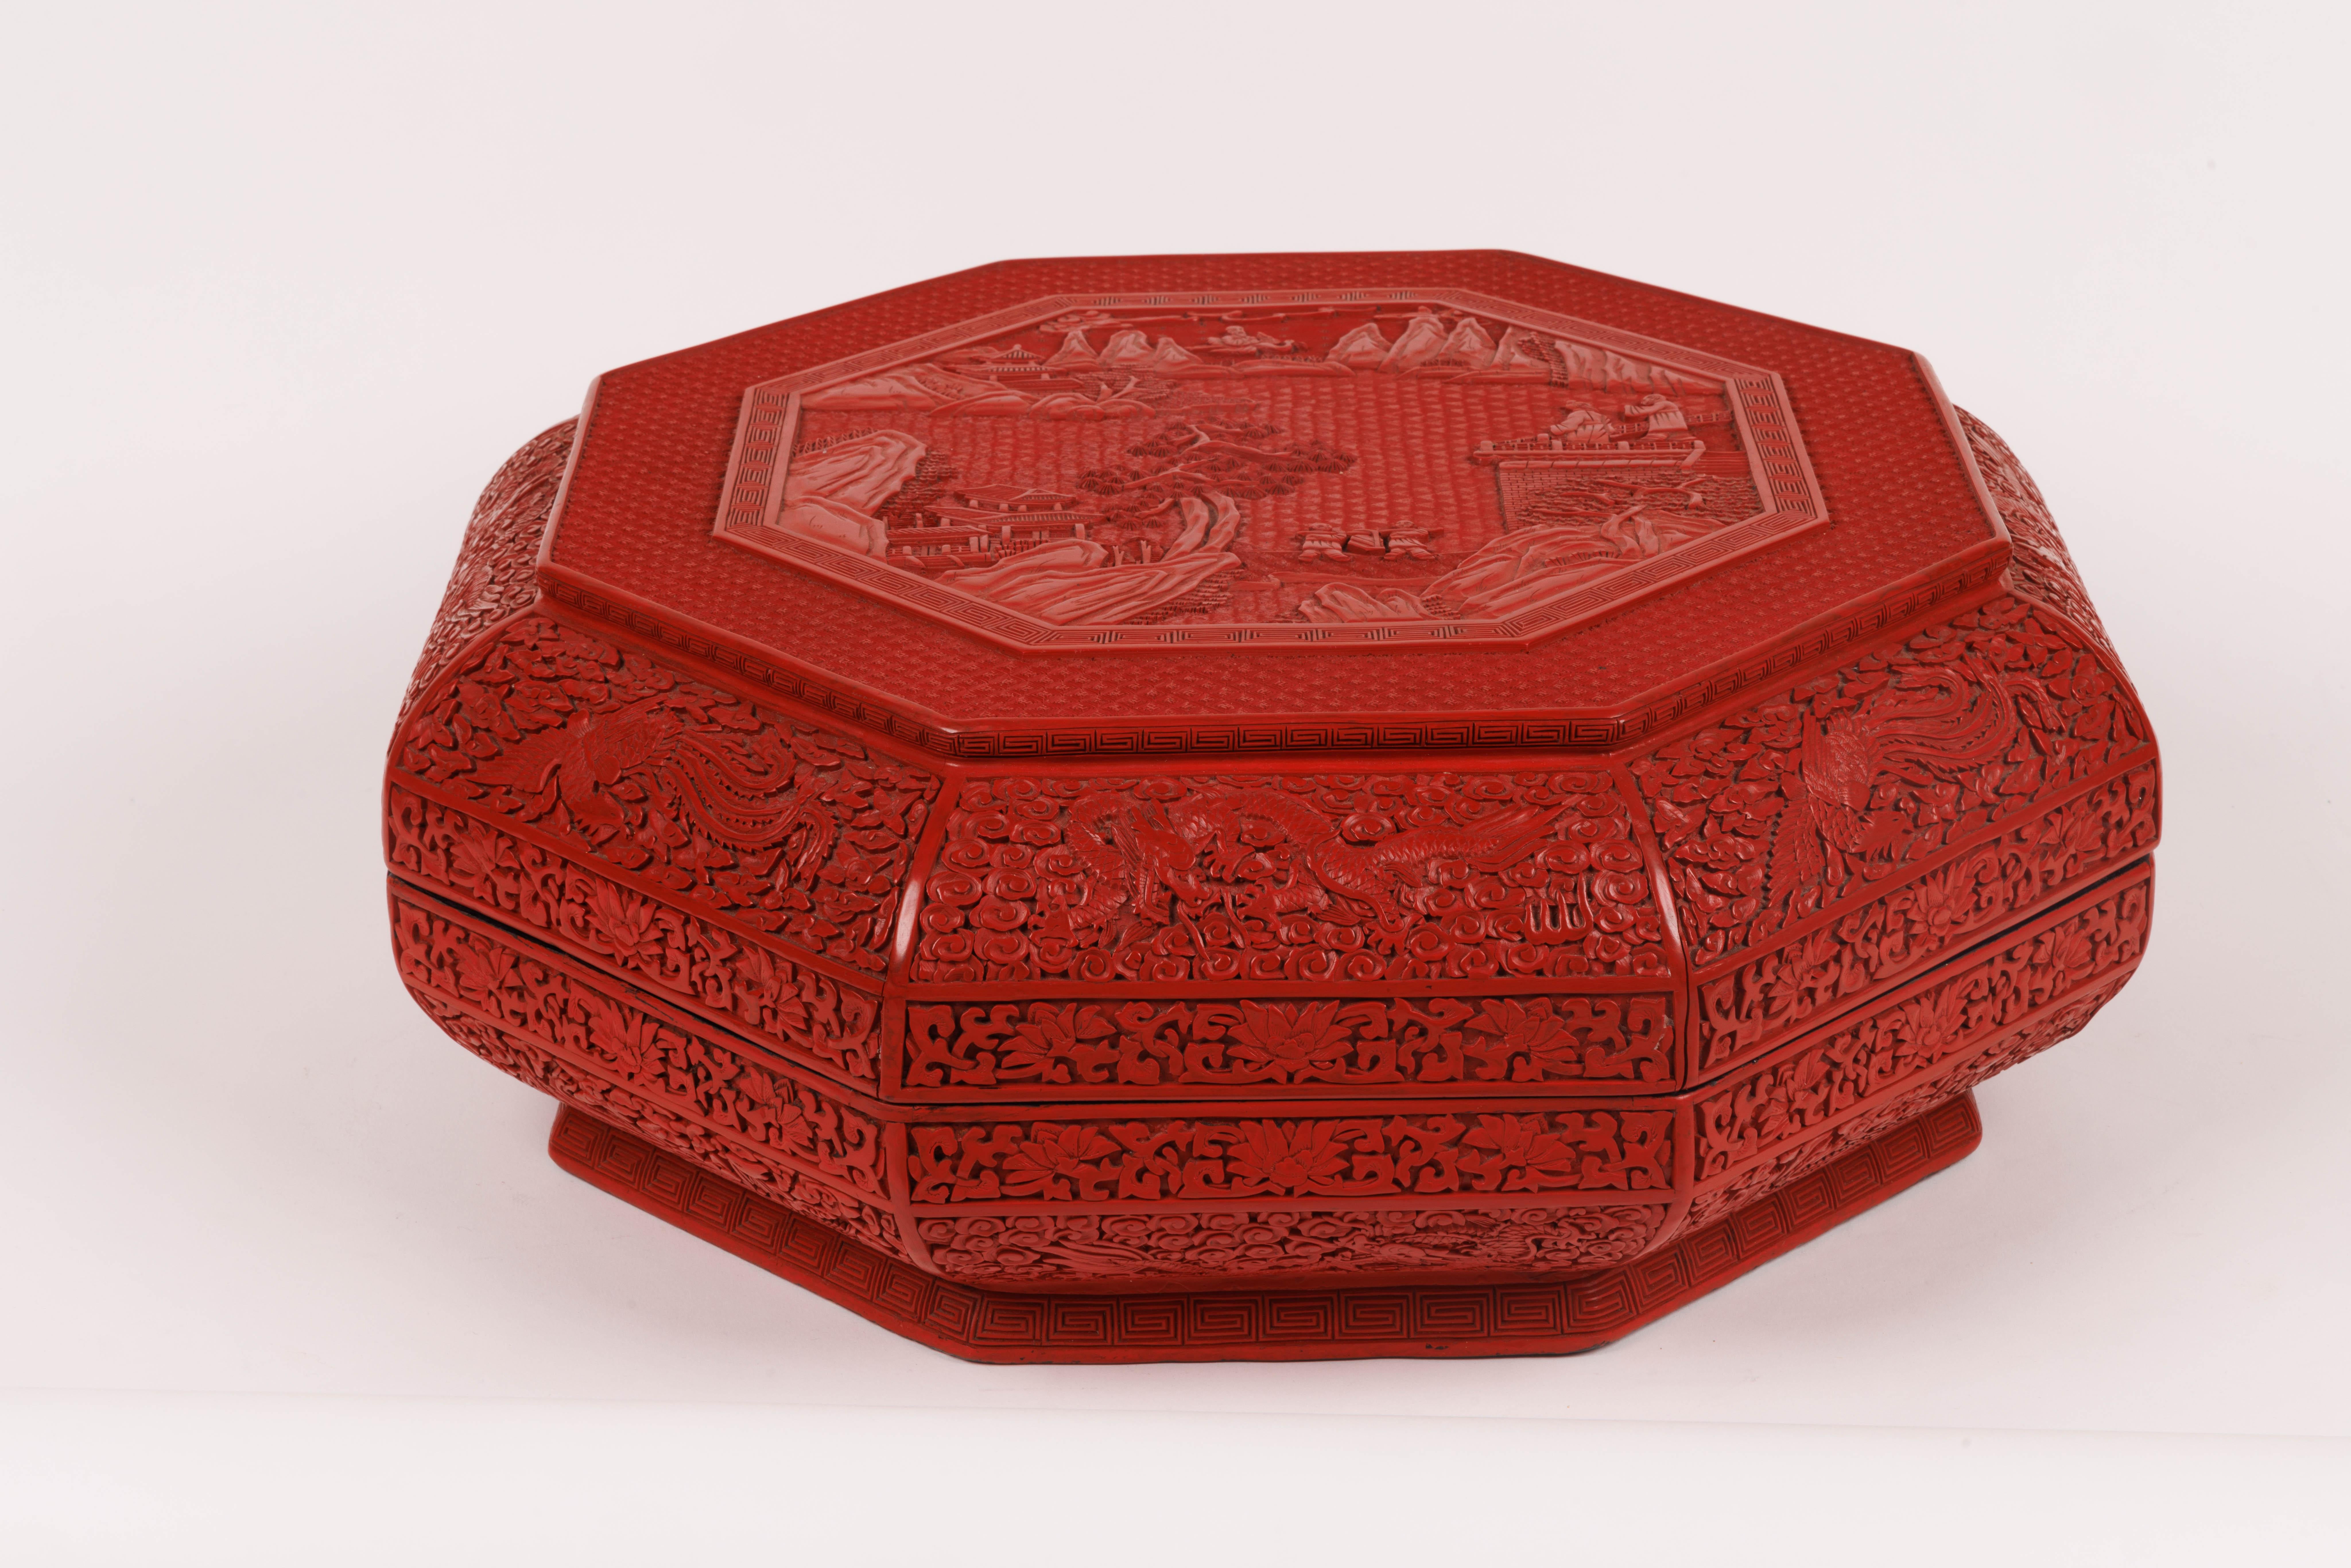 Seltene chinesische Zinnoberlackdose mit Deckel in Palastgröße, Qing-Dynastie

Diese Schachtel mit Deckel in Palastgröße ist ein seltenes und exquisites Kunstwerk, das im 19. Jahrhundert während der Qing-Dynastie hergestellt wurde, die für ihre